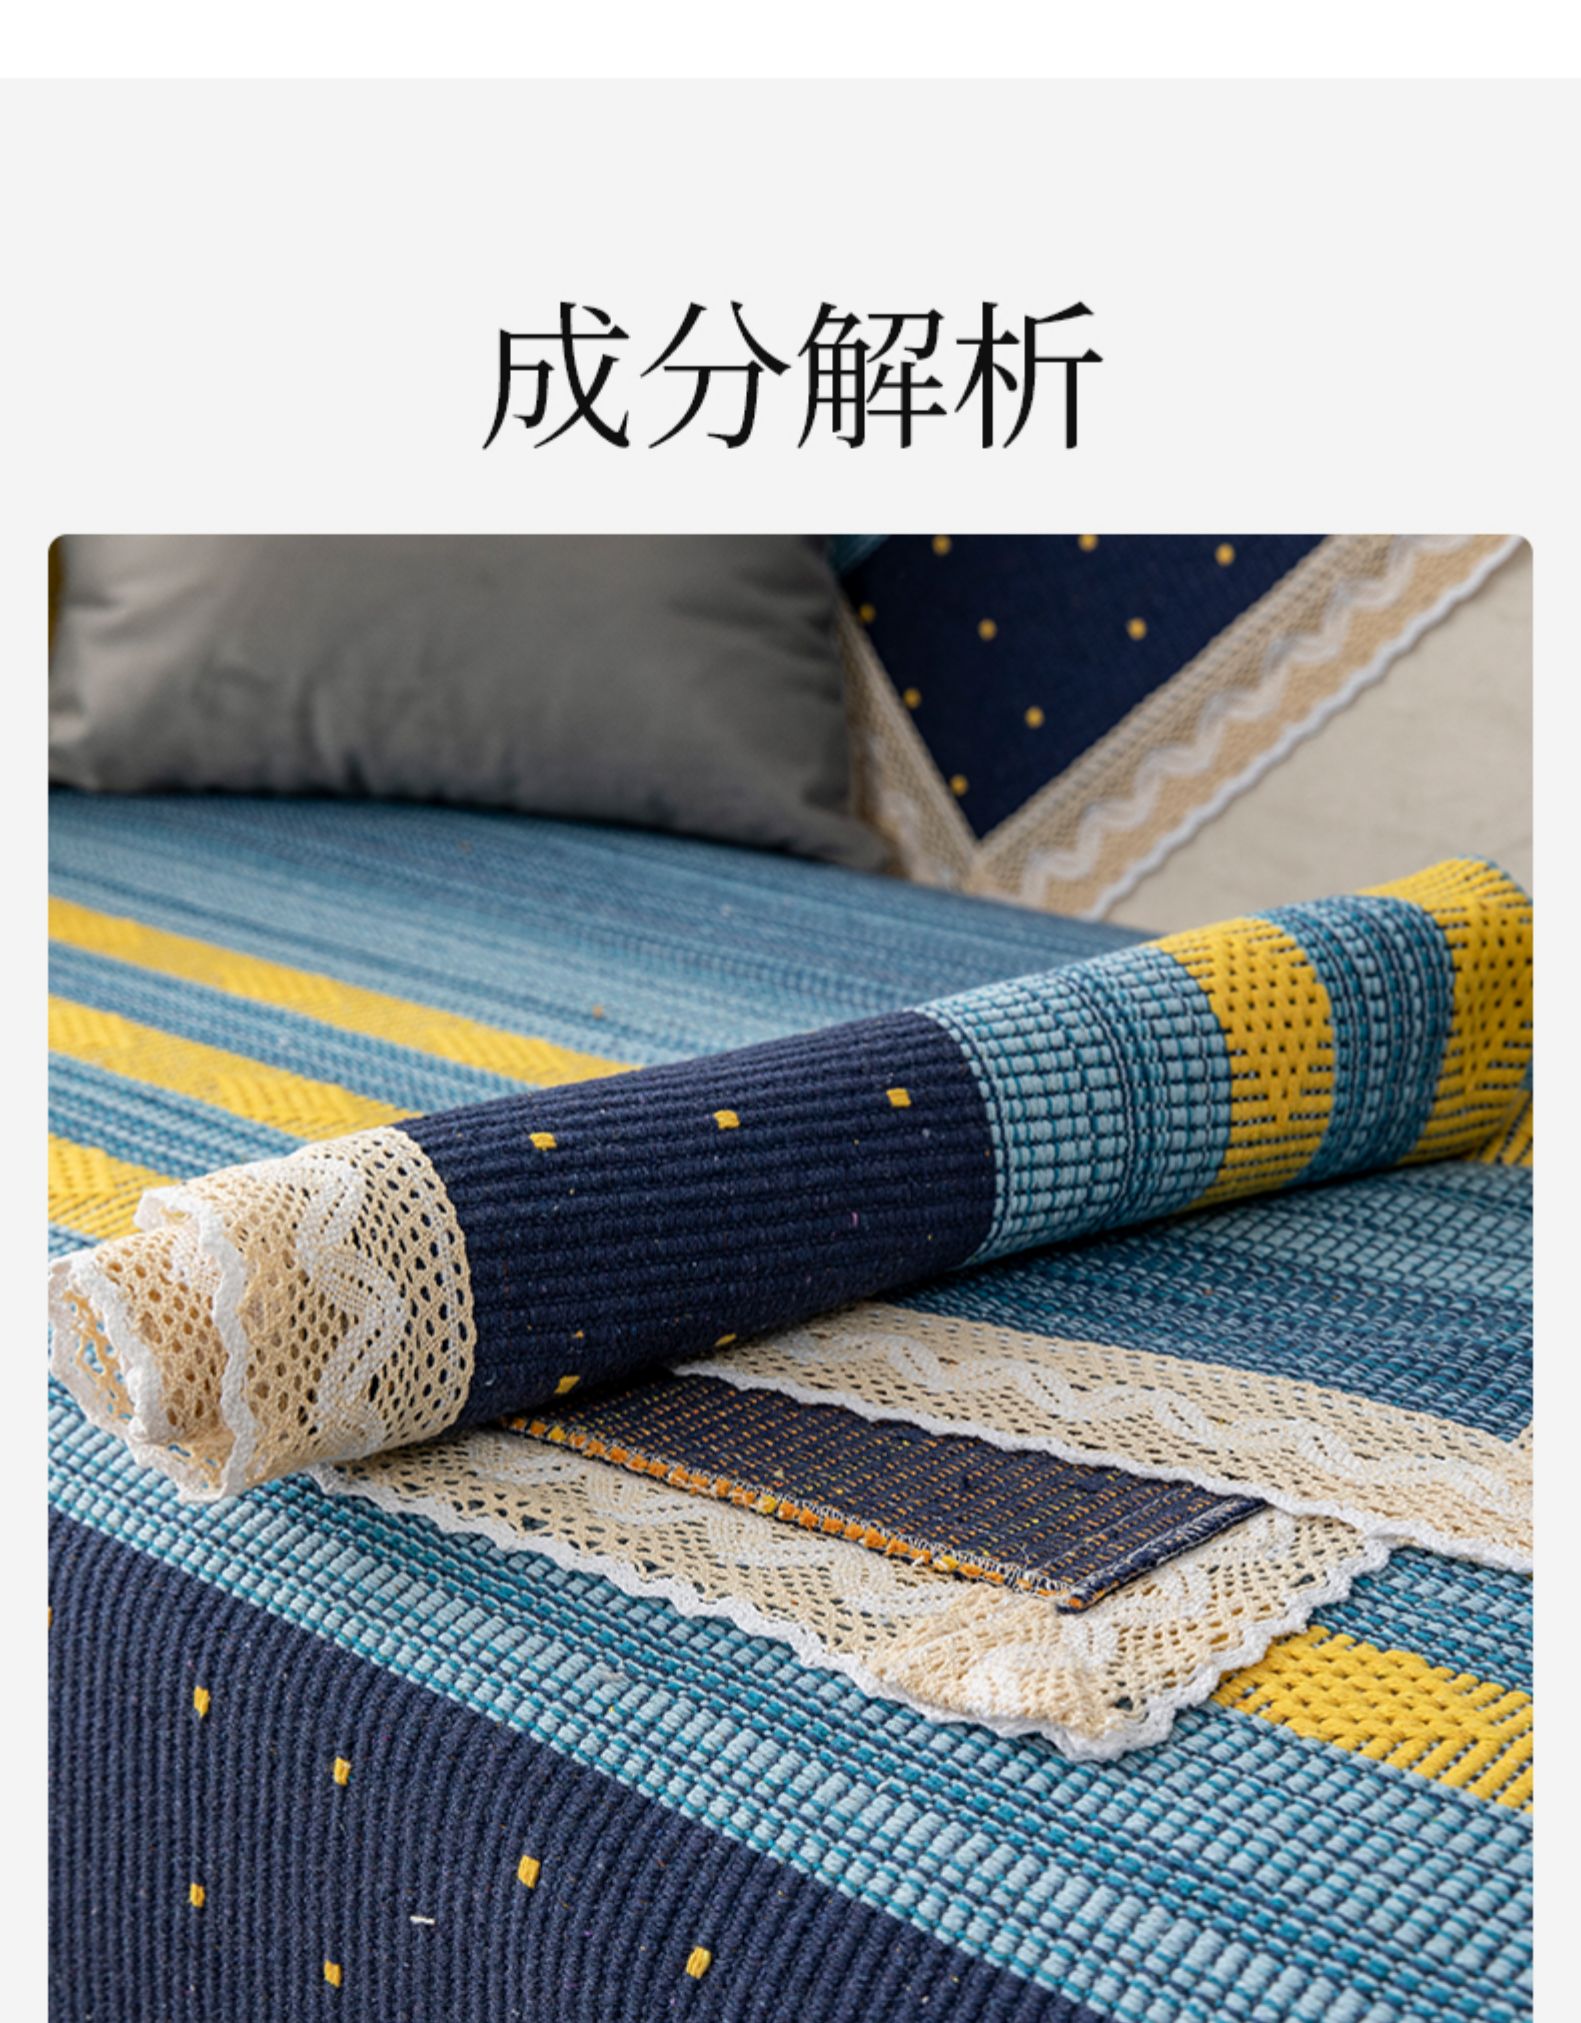 @欣悅小佳 新款星空藍沙發墊套裝貴妃組合沙發套罩四季通用沙發蓋布巾棉麻沙發墊